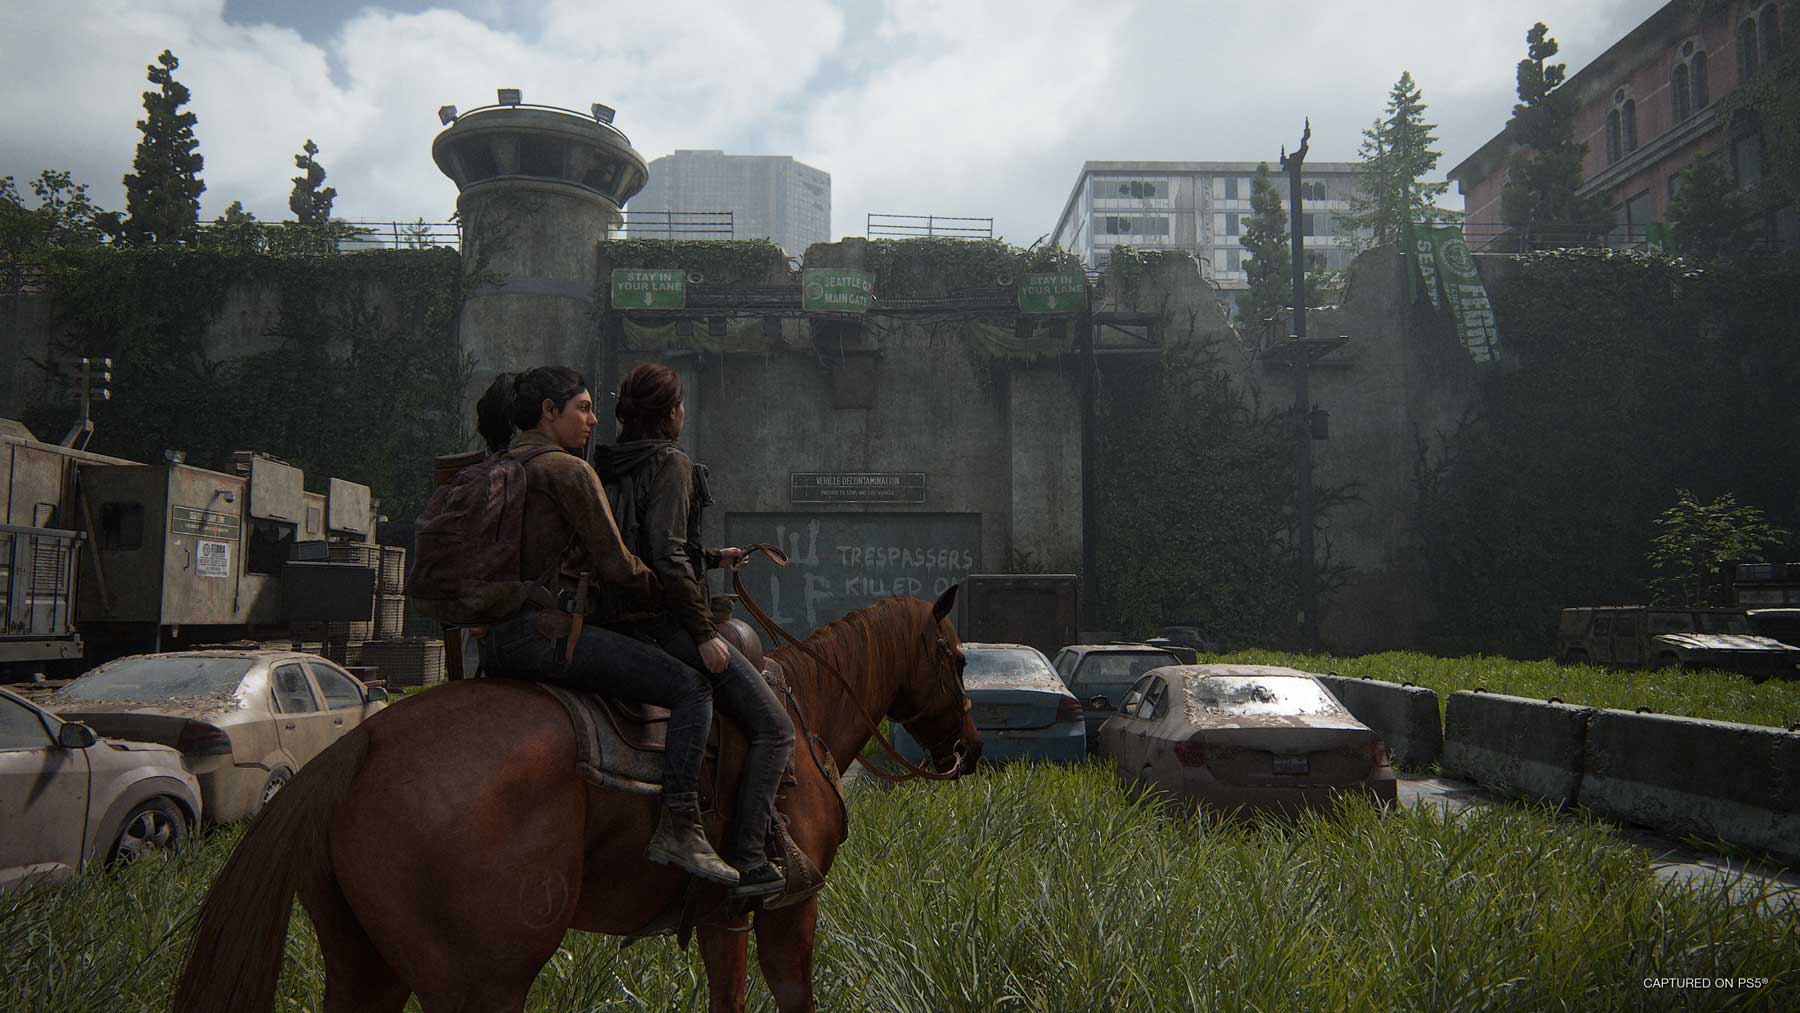 The Last of Us: Part 2 (PS4) - Gigantti verkkokauppa